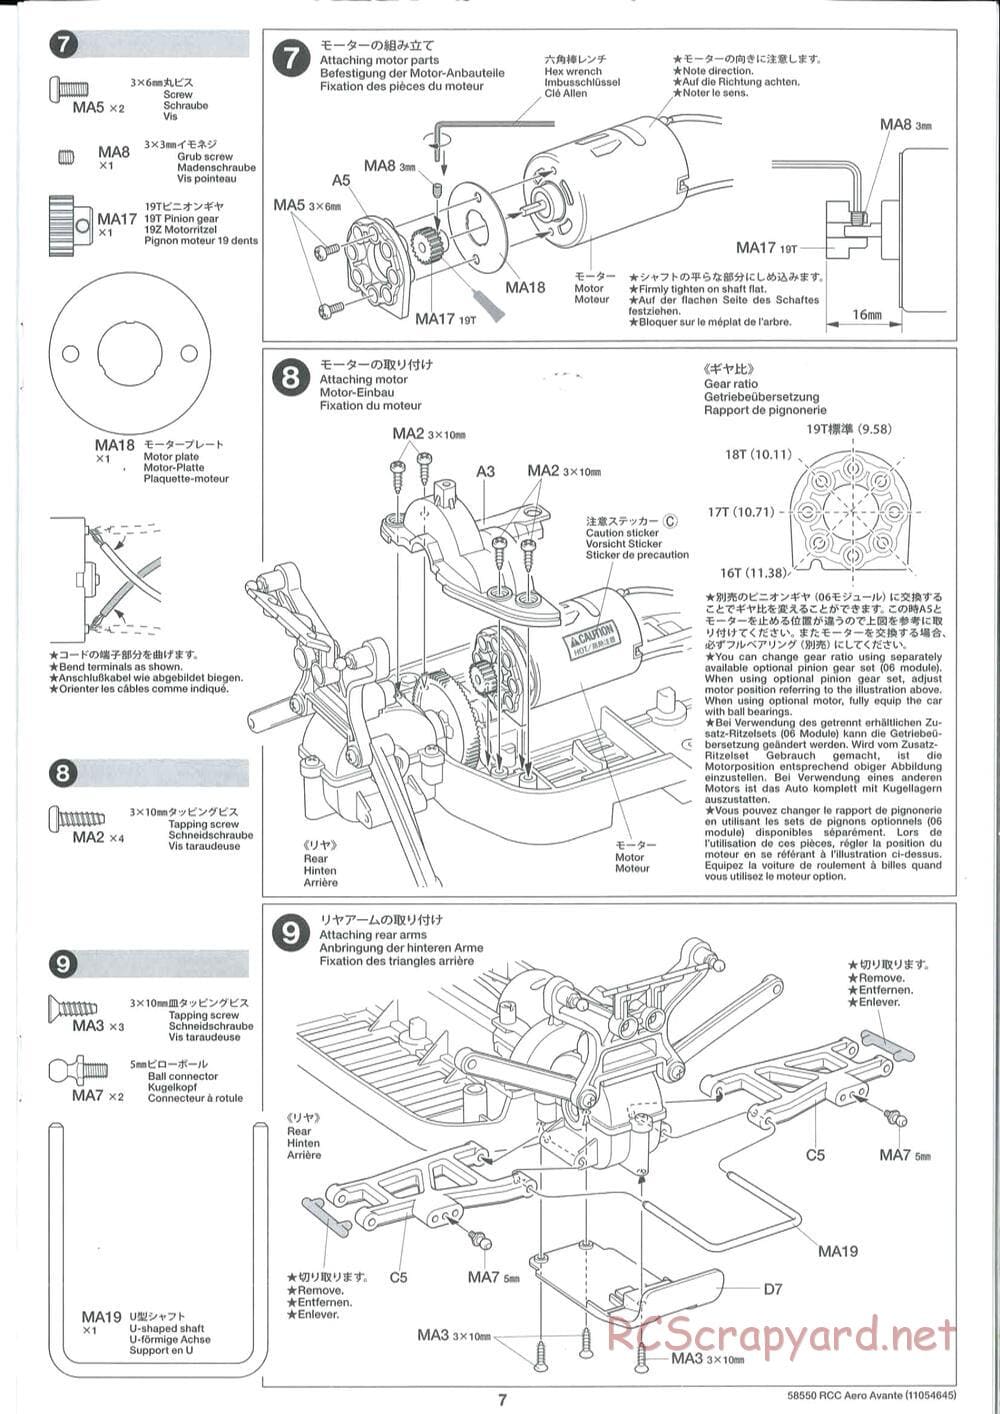 Tamiya - Aero Avante Chassis - Manual - Page 7